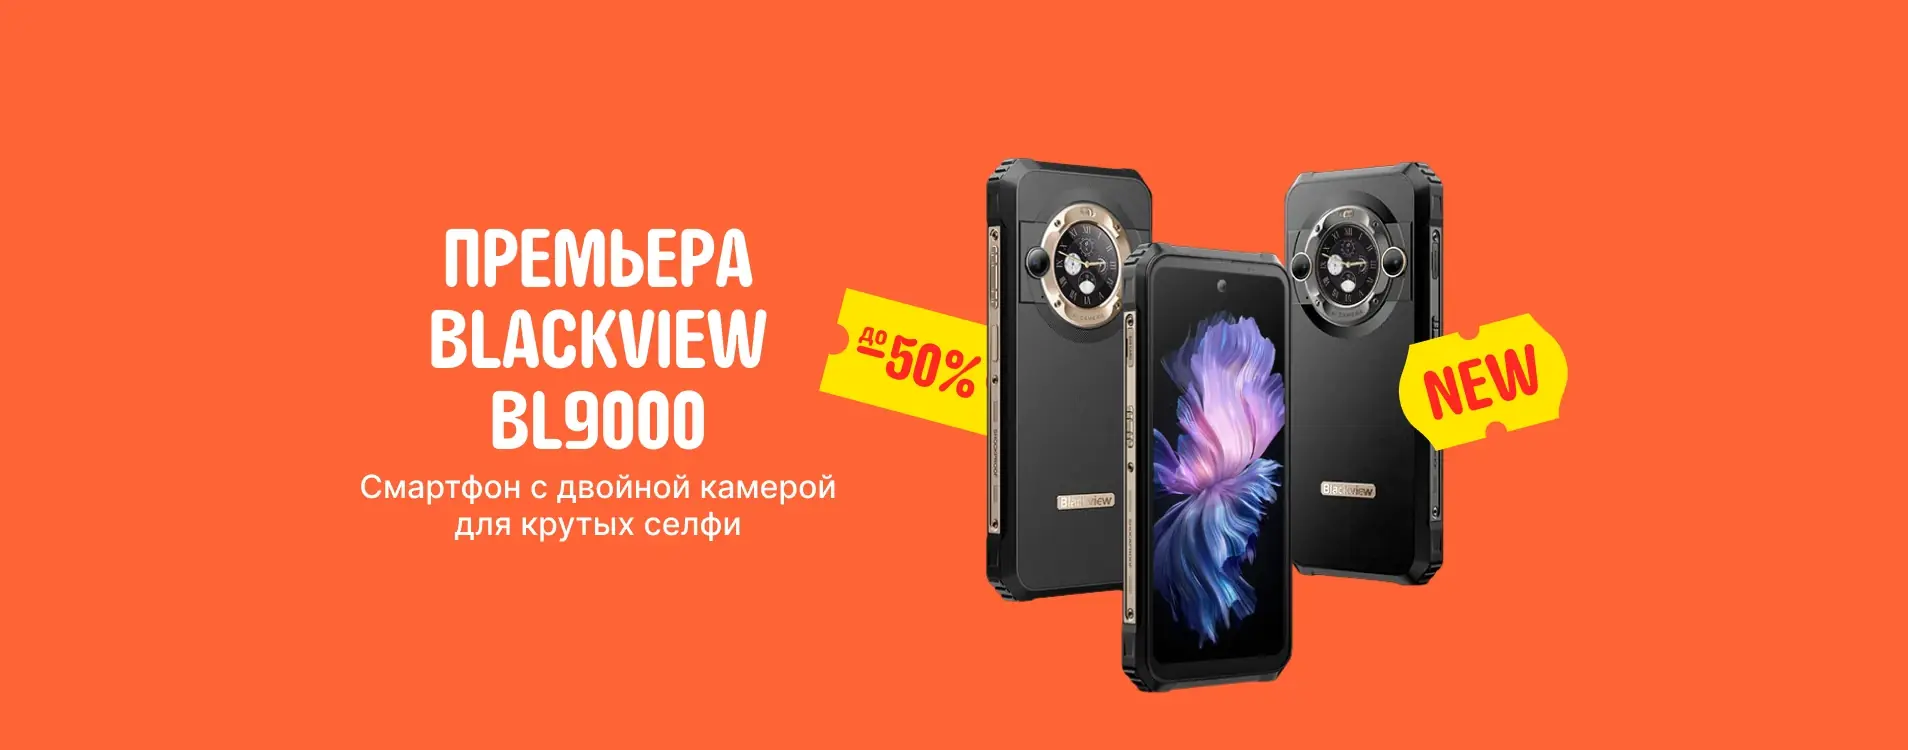 Распродажа смартфонов Blackview BL9000 со скидкой